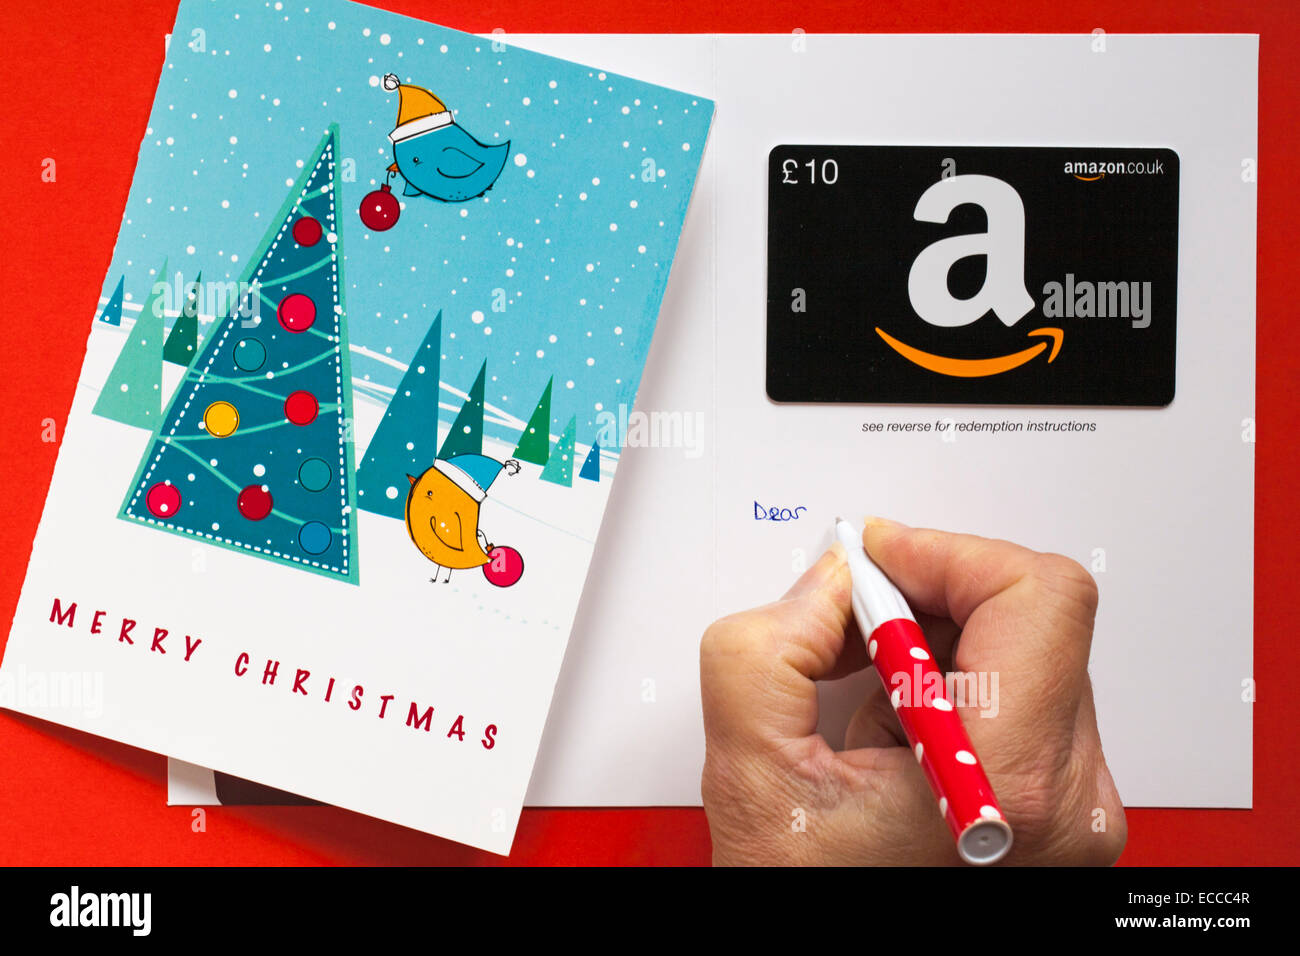 Amazon Frohe Weihnachten giftcard mit Vögeln schmücken Weihnachtsbaum  Geschenkkarte auf rotem Hintergrund einstellen Stockfotografie - Alamy